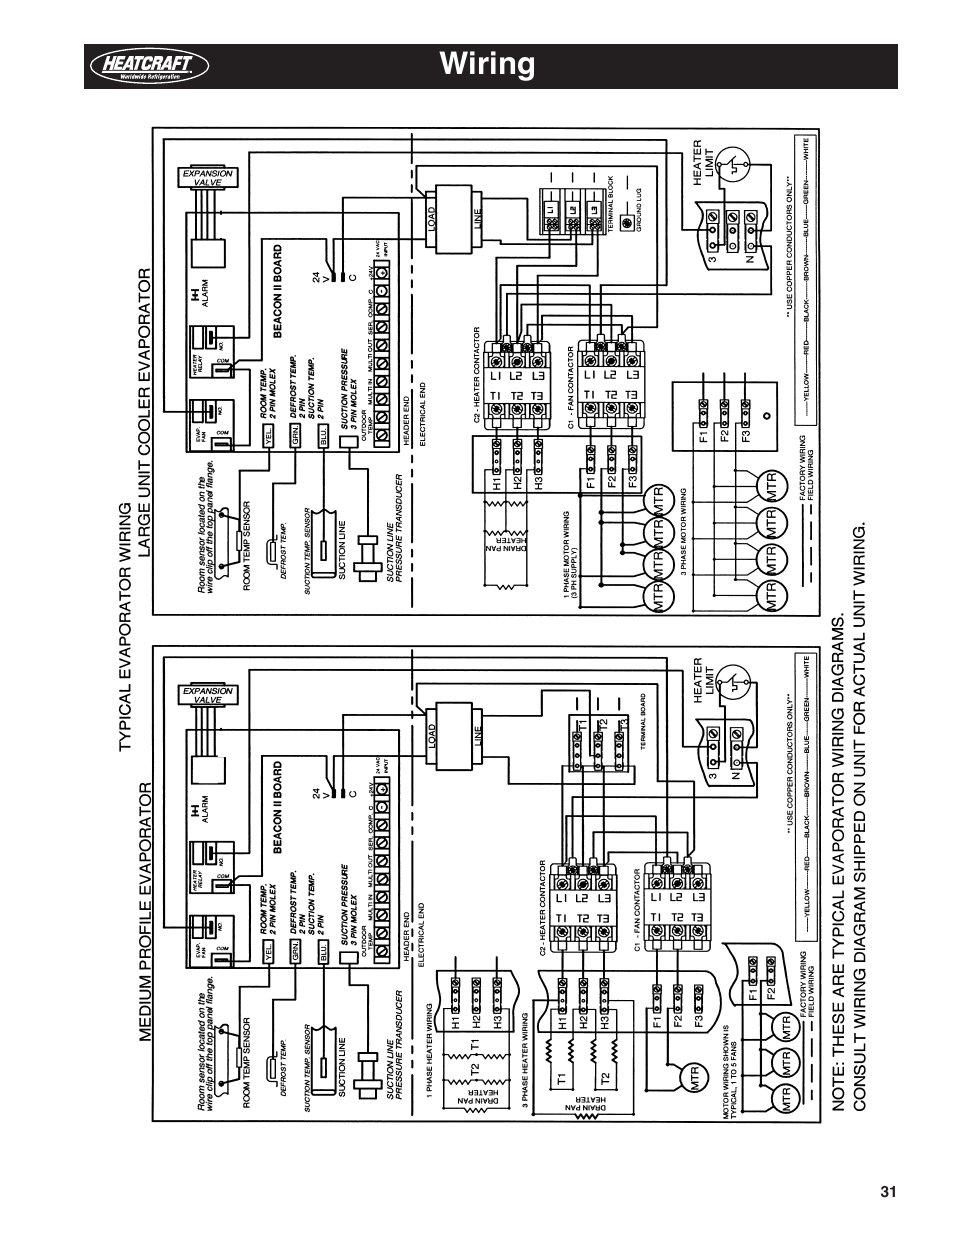 Bohn Evaporator Wiring Diagram from www.manualsdir.com